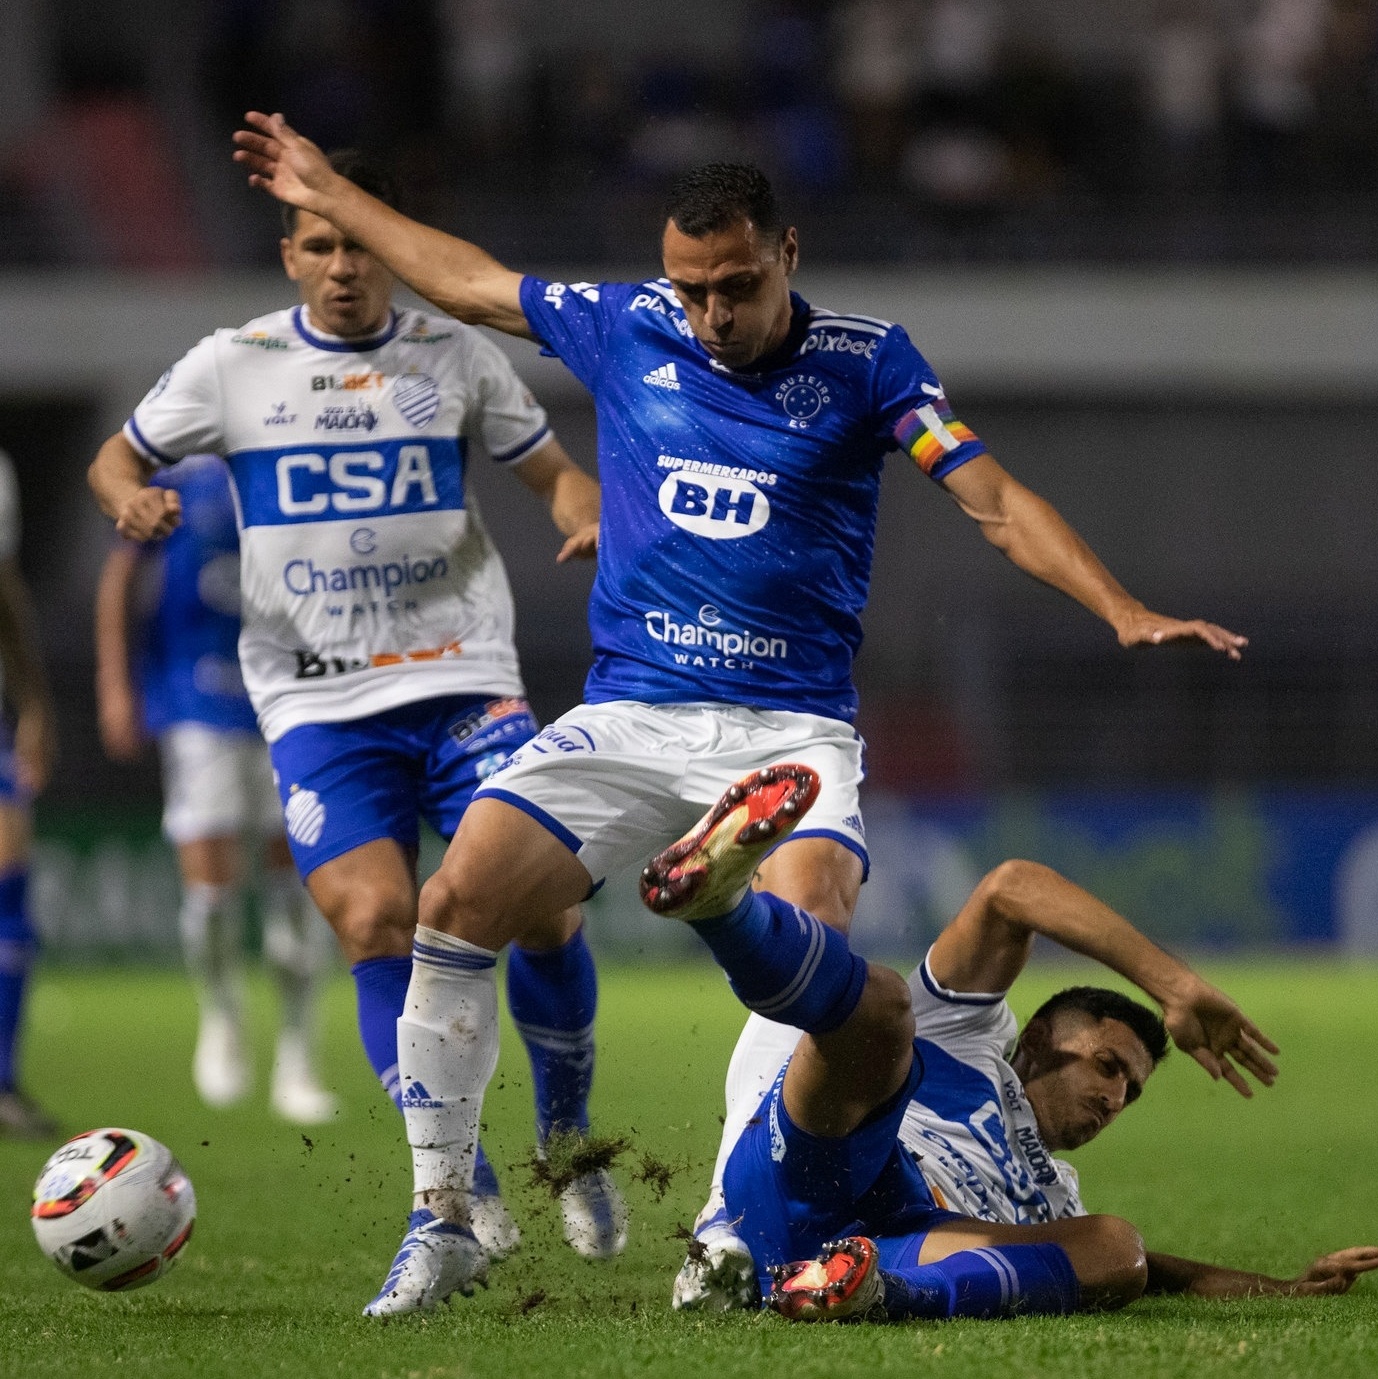 Cruzeiro 🦊 on X: HOJE TEM CRUZEIRO!!!!! 🦊💙 No último jogo do primeiro  turno, vamos em busca de nos isolar ainda mais na liderança! #CSAxCRU